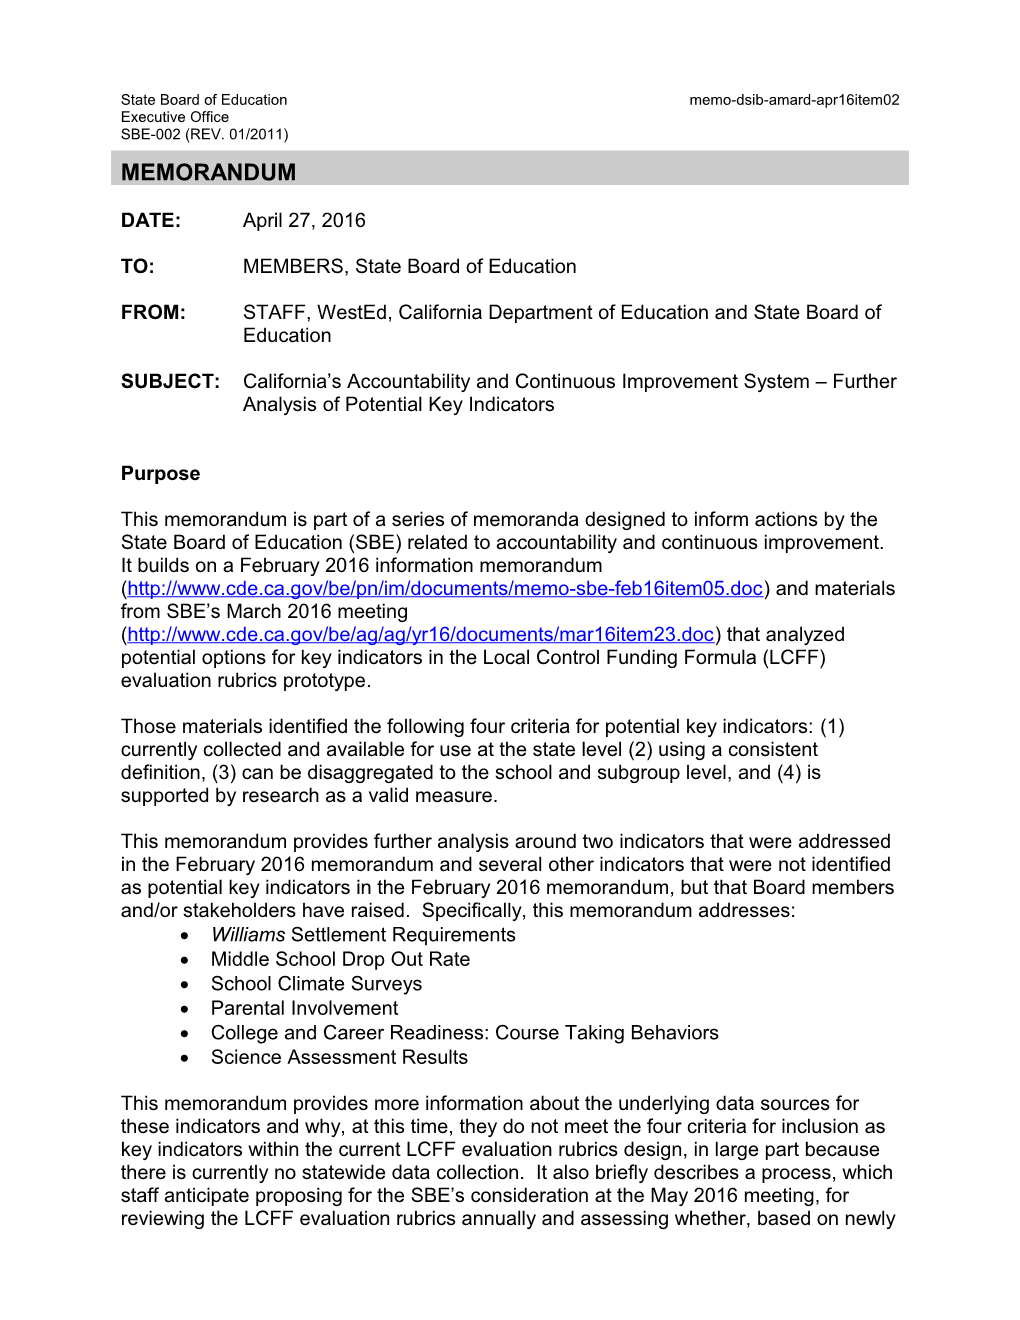 April 2016 Memo AMARD Item 02 - Information Memorandum (CA State Board of Education)